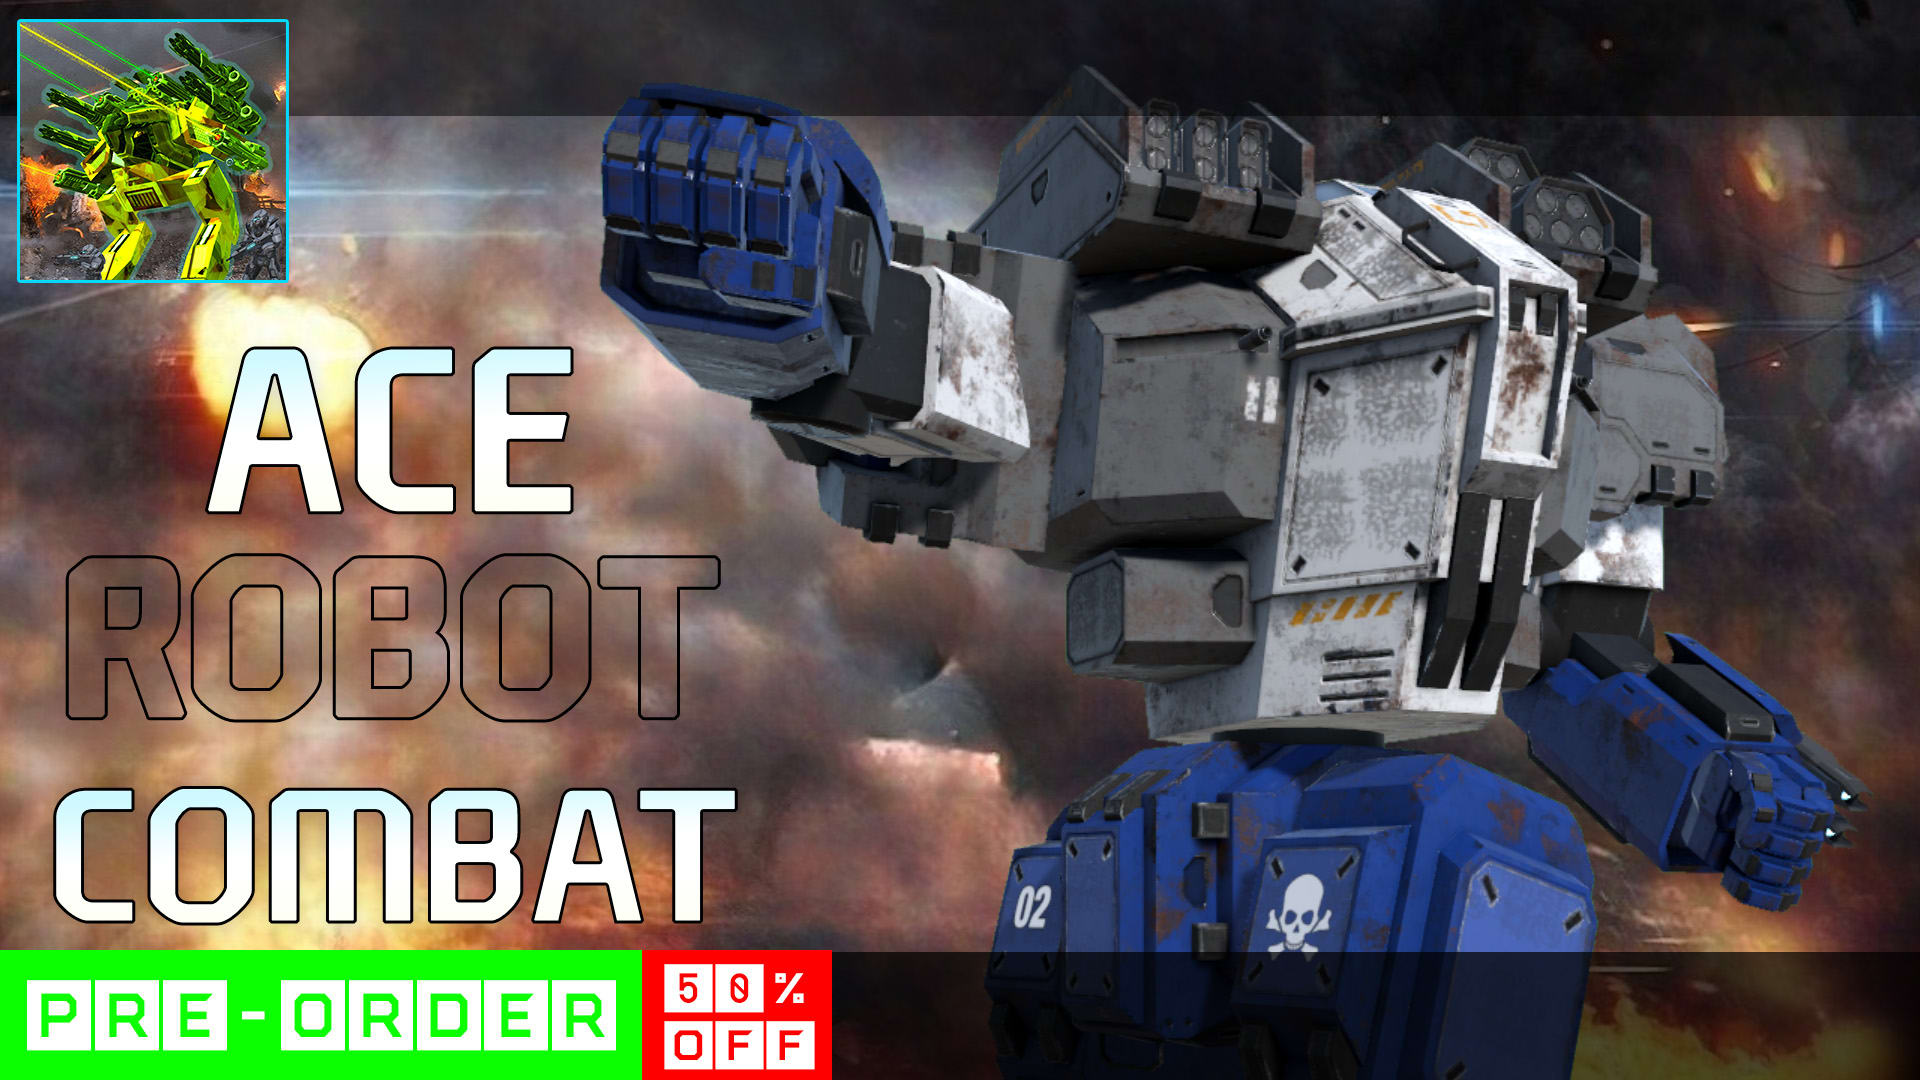 Ace Robot Combat 1